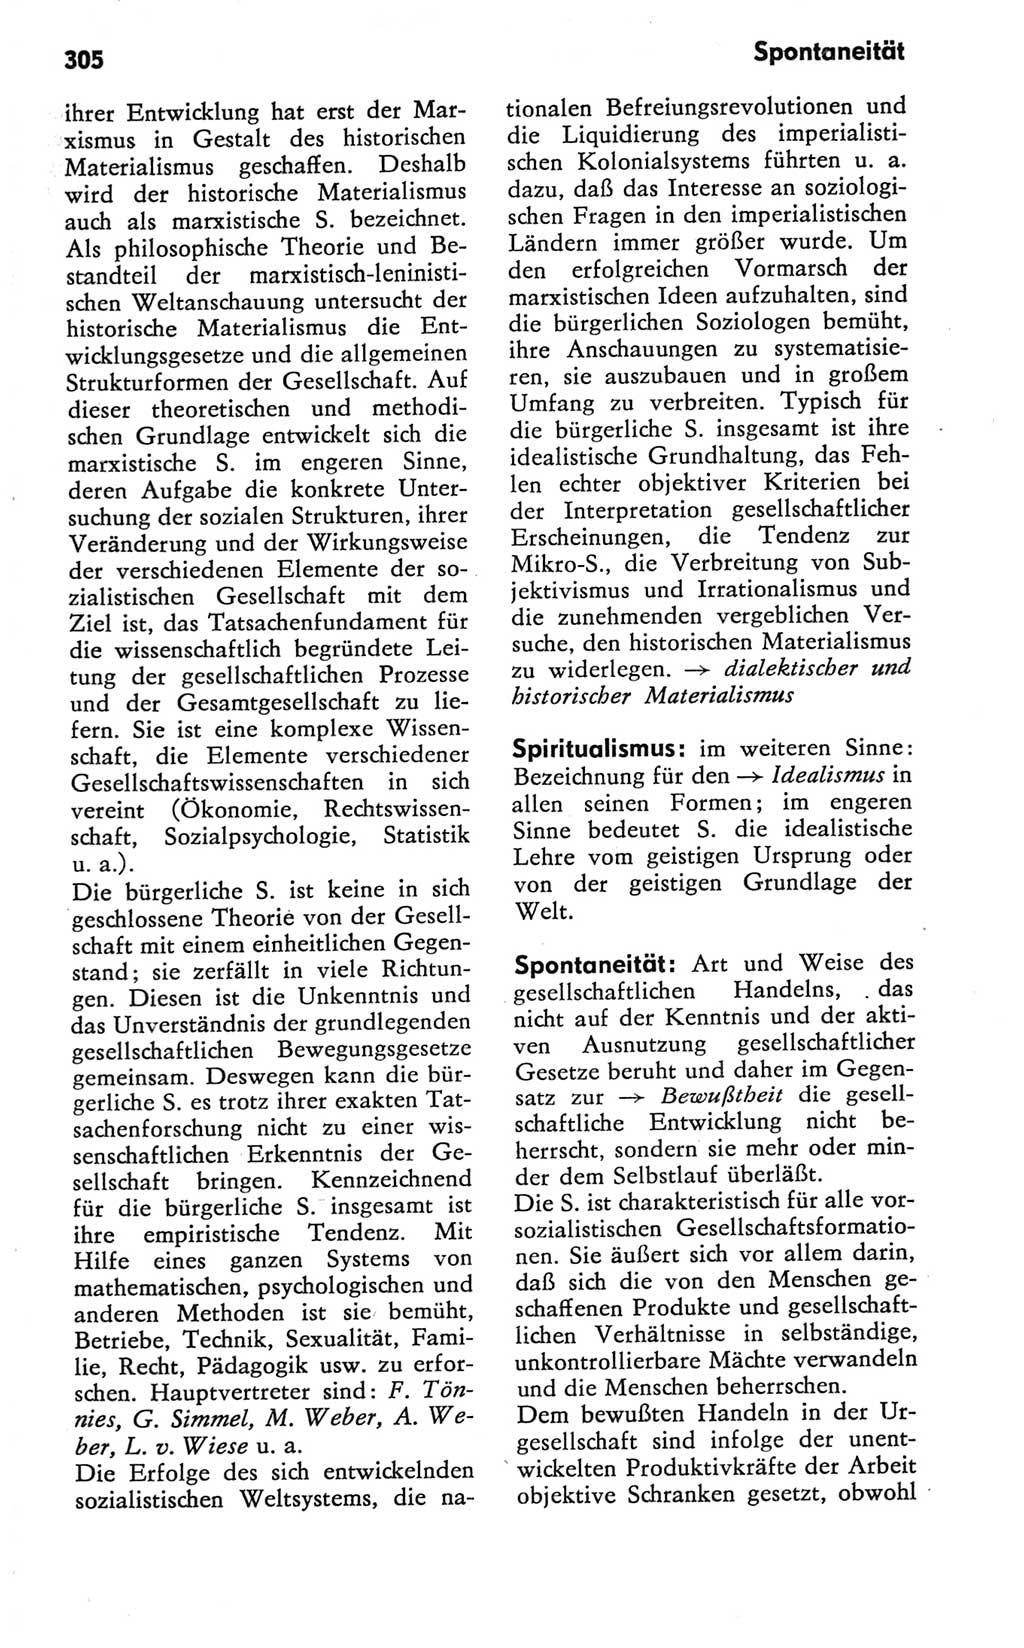 Kleines Wörterbuch der marxistisch-leninistischen Philosophie [Deutsche Demokratische Republik (DDR)] 1981, Seite 305 (Kl. Wb. ML Phil. DDR 1981, S. 305)